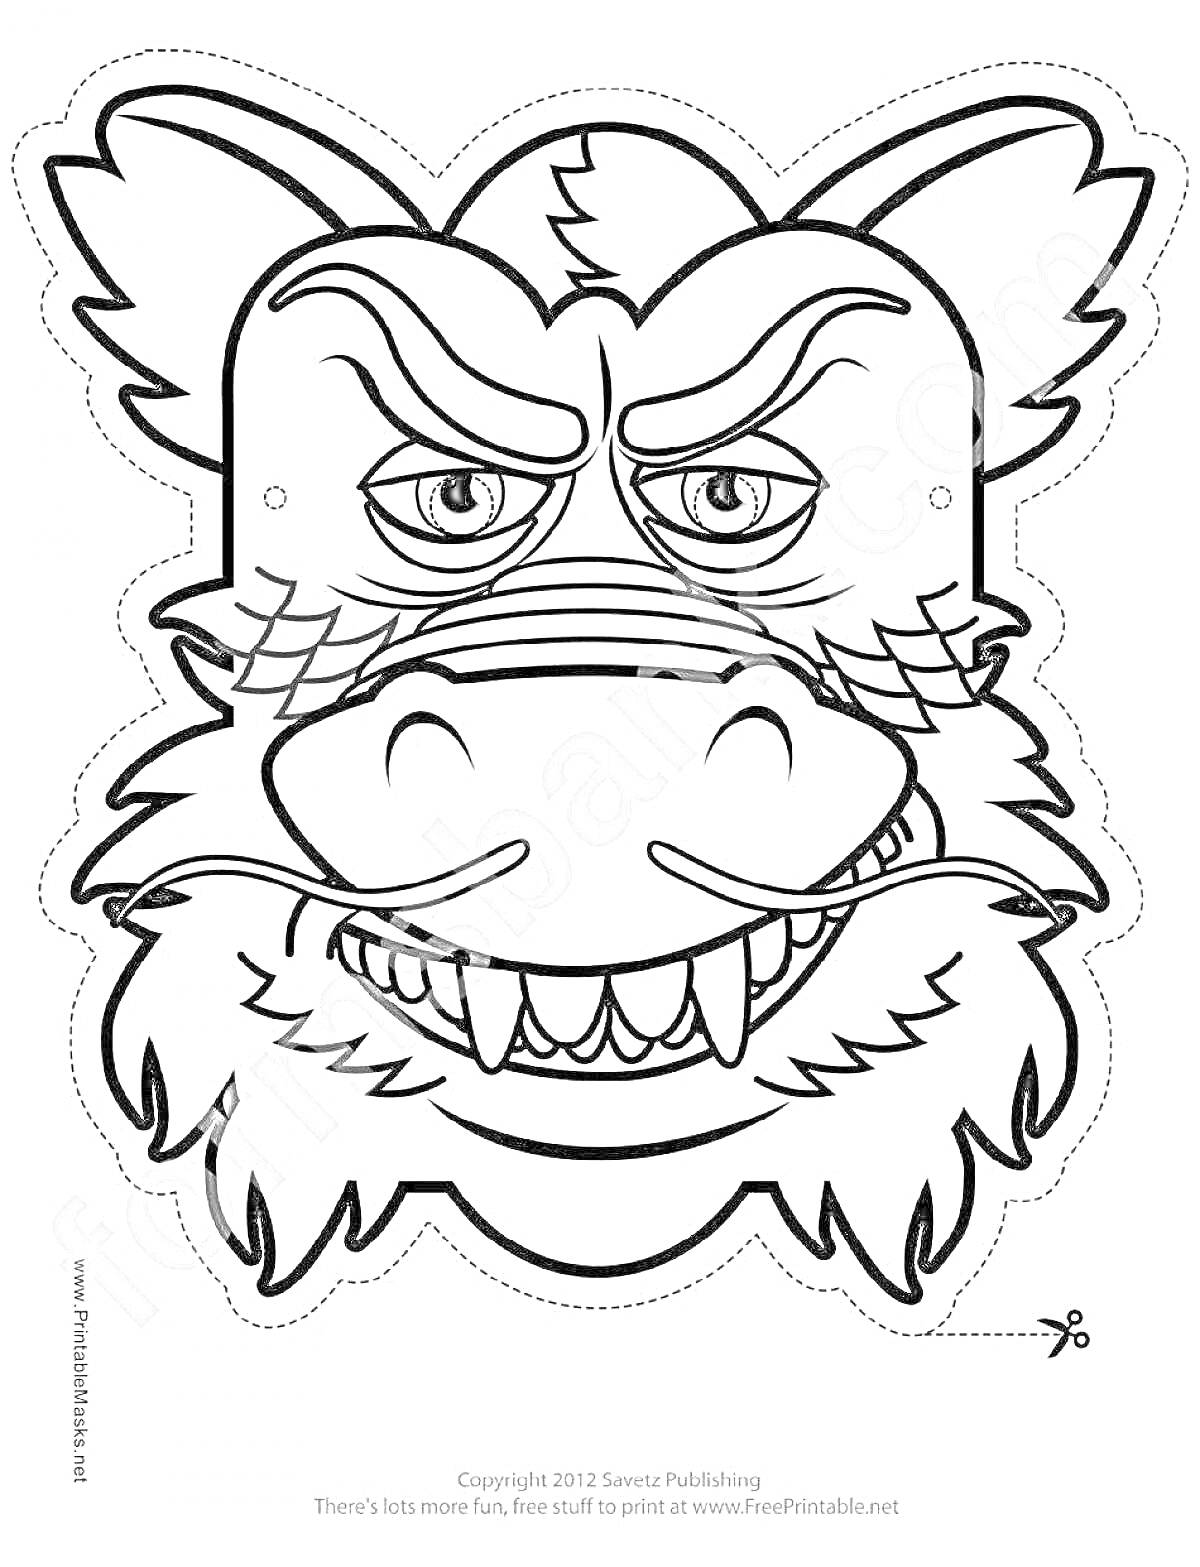 Раскраска маска в виде драконьей головы с острыми зубами, ушами и деталями на морде